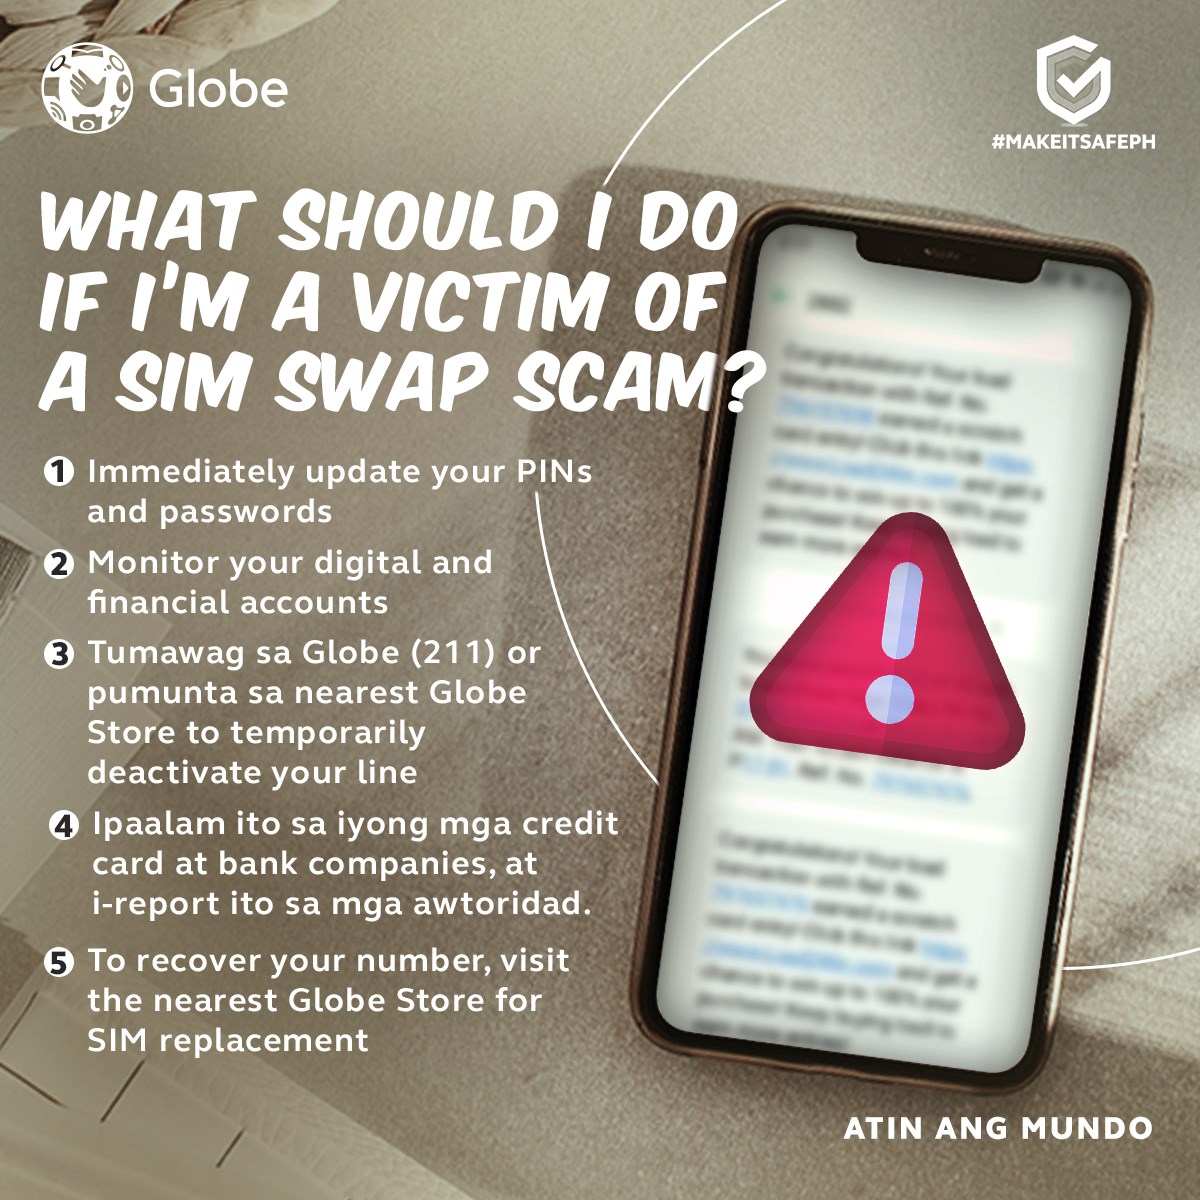 SIM Swap Scam